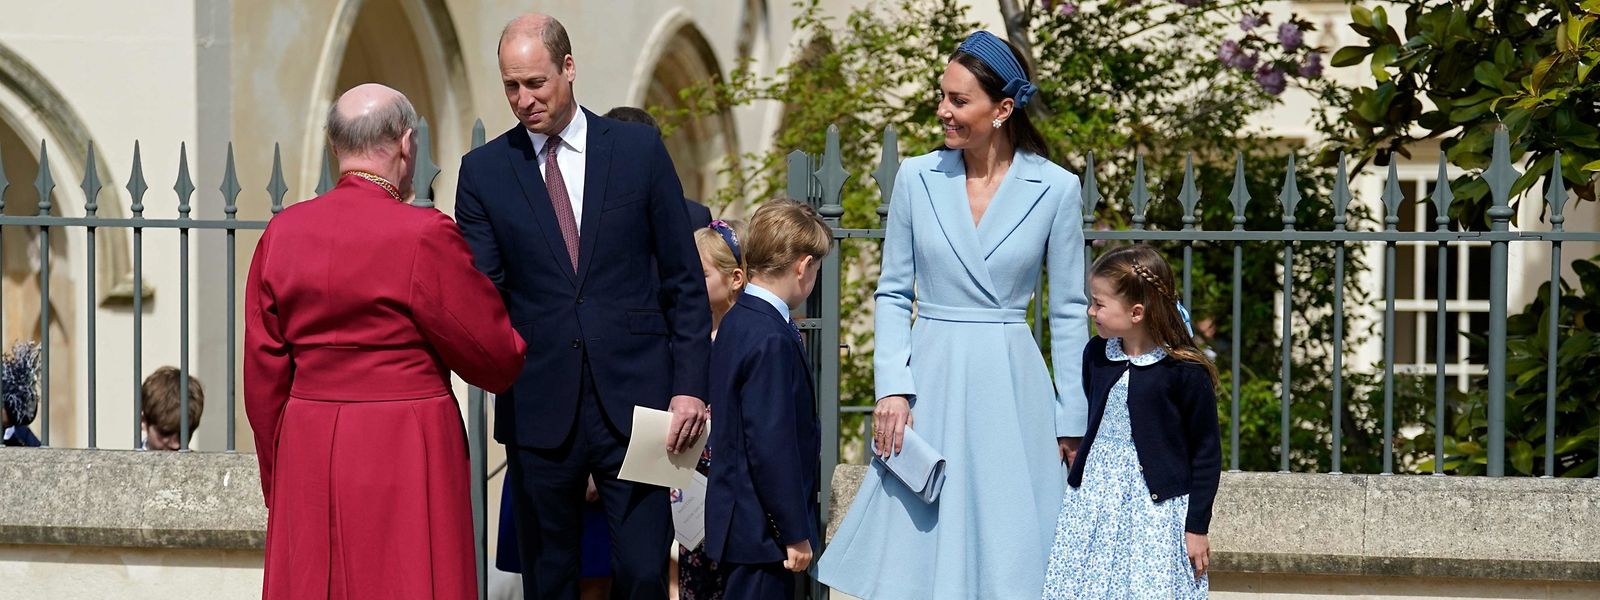 Die britischen Royals William und Kate mit ihren Kindern George (8) und Charlotte (6) vor dem Ostergottesdienst in Windsor. Das jüngste Kind Louis (3) blieb der Messe fern.